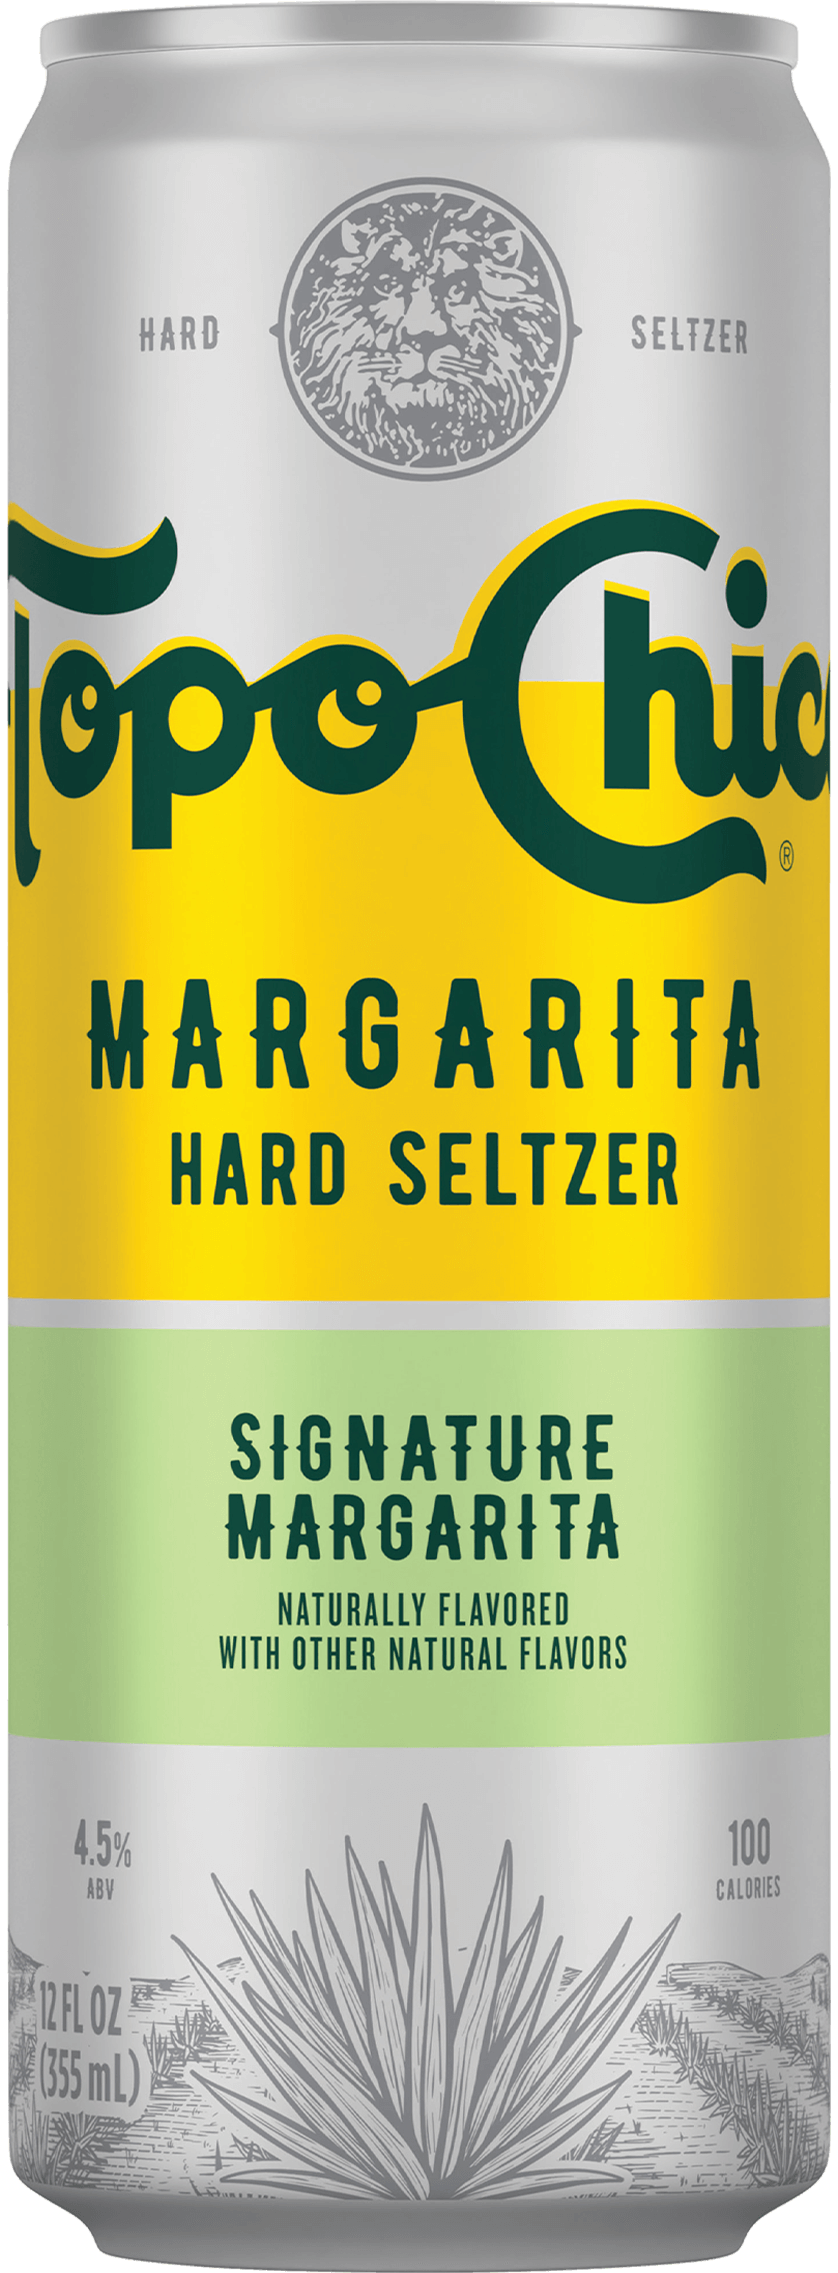 Signature Margarita